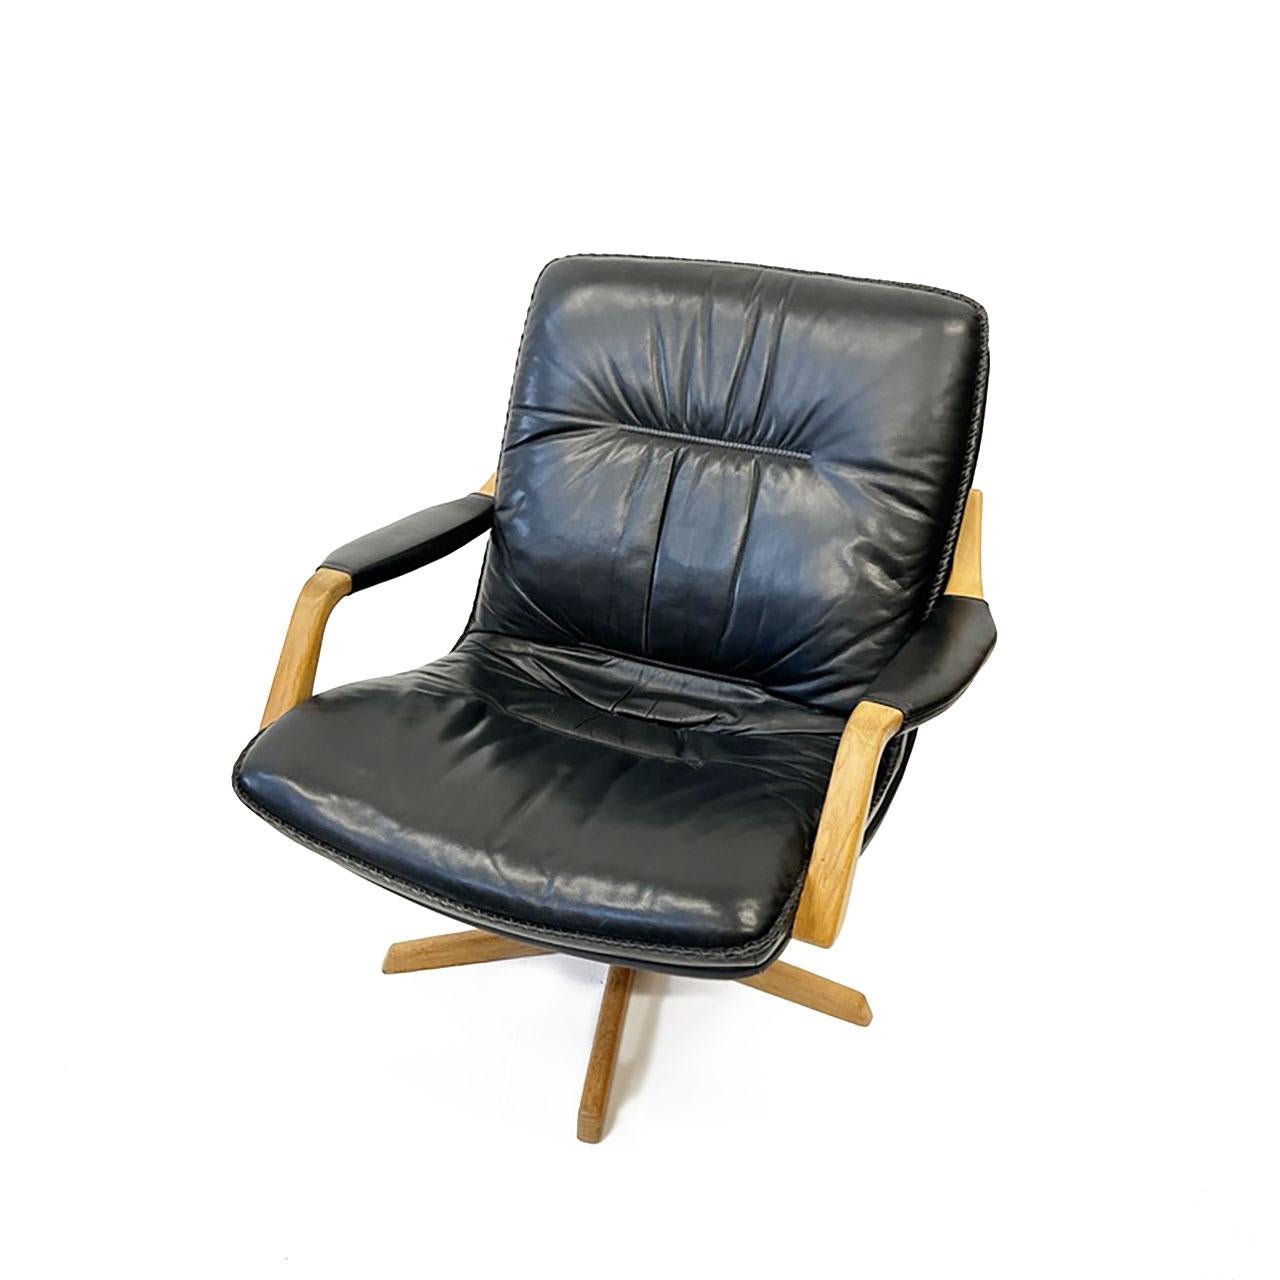 Fabriqué au Danemark par Berg Furniture dans les années 1970. Revêtement en cuir noir garni de points de chaînette, avec une belle patine naturelle. La base et les accoudoirs sont en chêne. La qualité, le design et le confort sont les principales